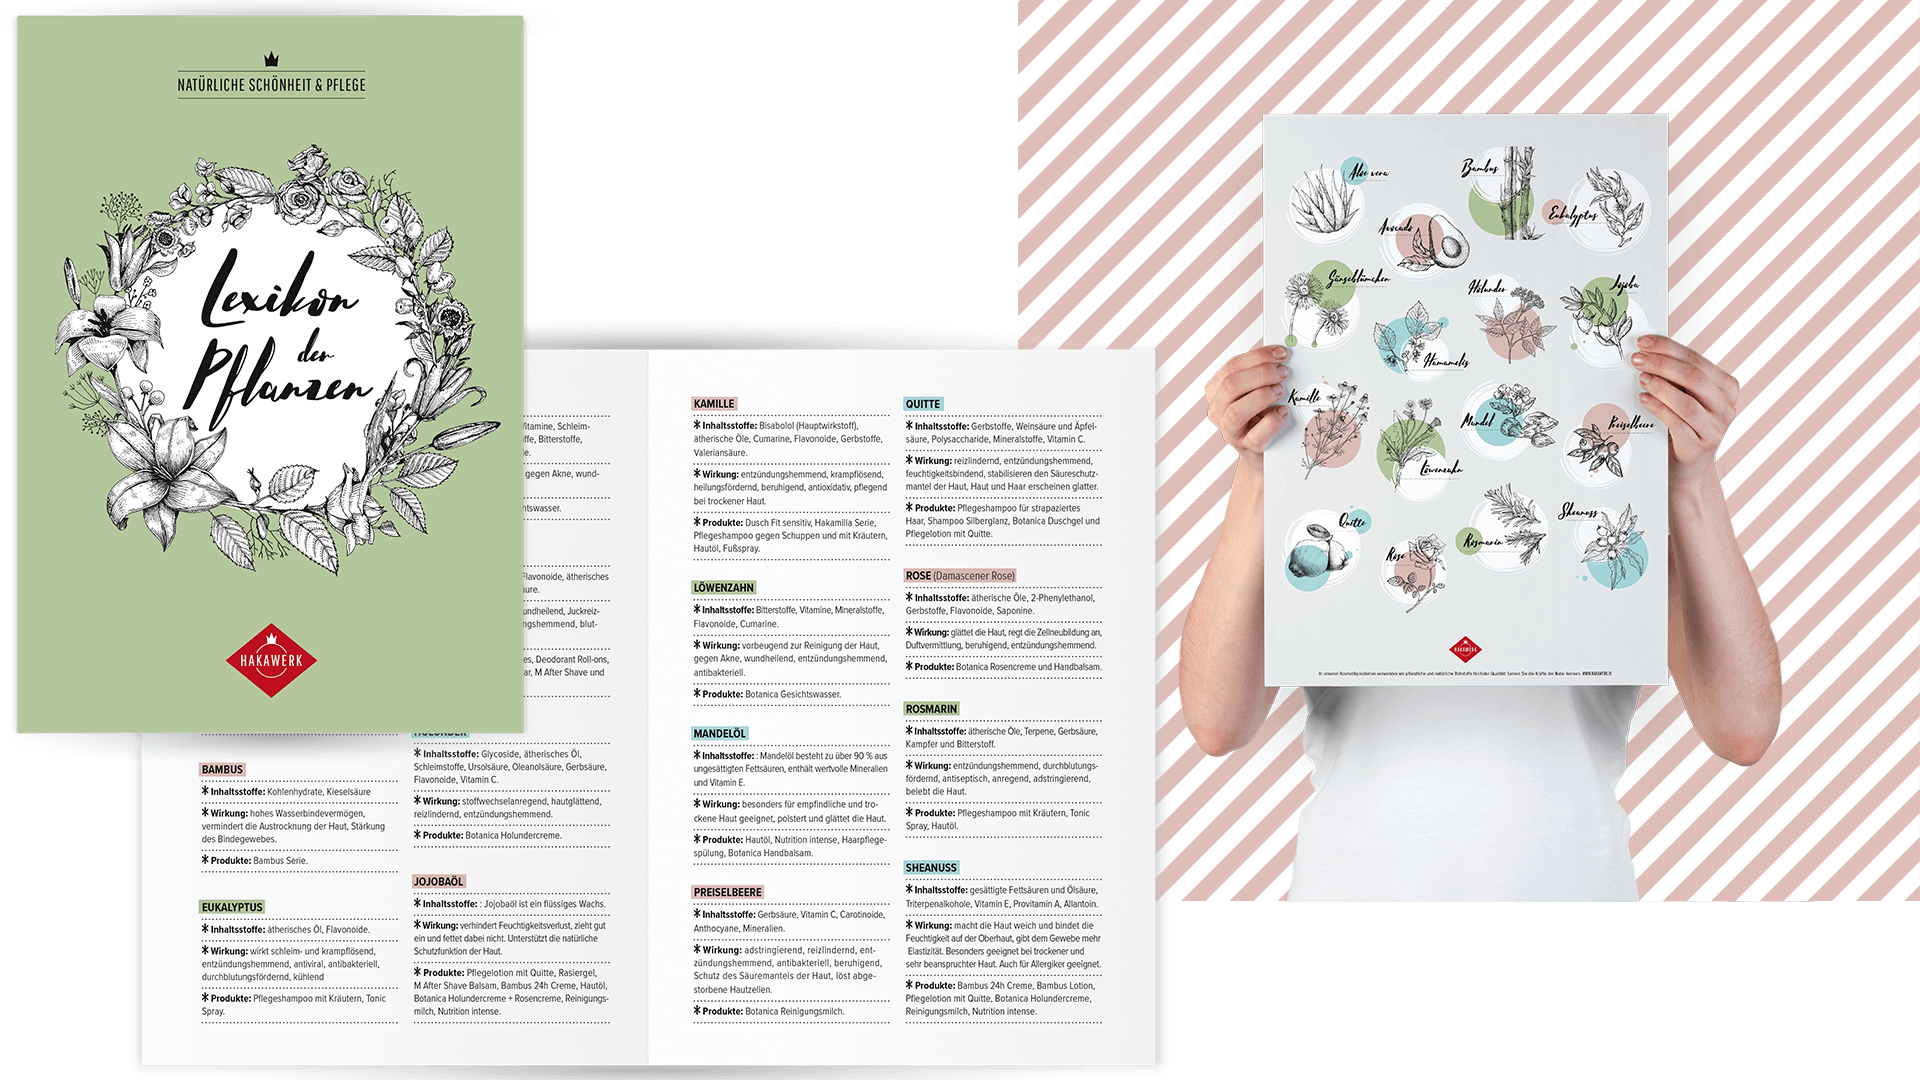 Hakawerk Pflanzenlexikon Grafikdesign: Titel und zwei Beispielseiten